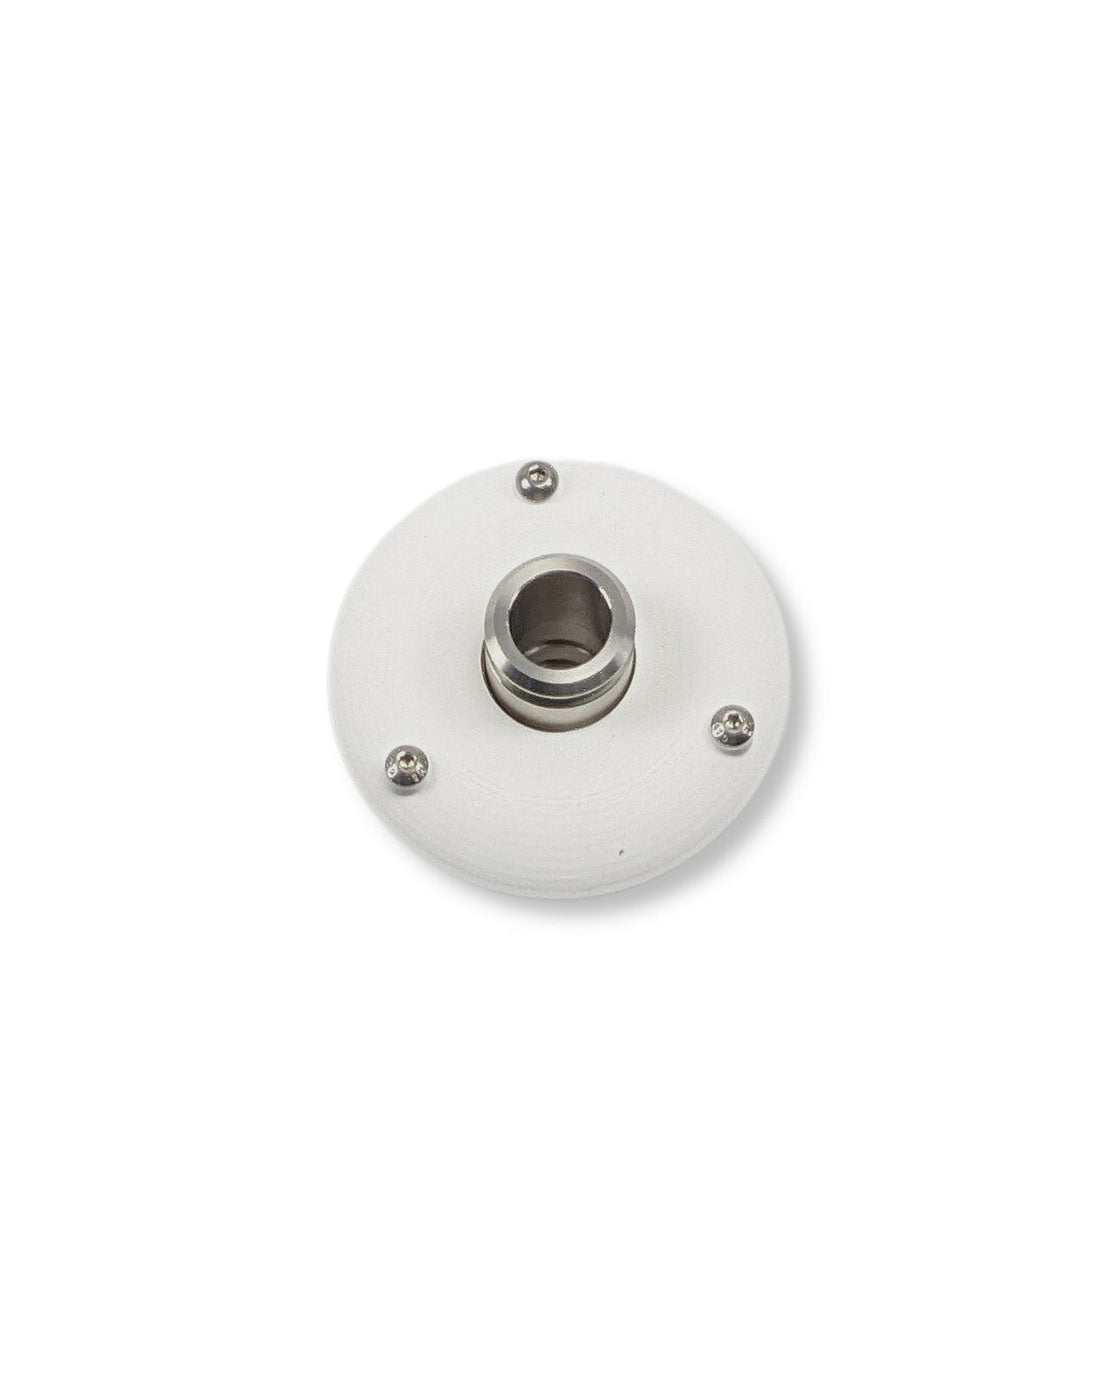 Ein weißer runder Knopf auf einer weißen Oberfläche, Teil des PURION IBC Universal 90W SPL BS, konzipiert für trübes Wasser und verwendet in Durchflussanlagen der UV Concept GmbH.